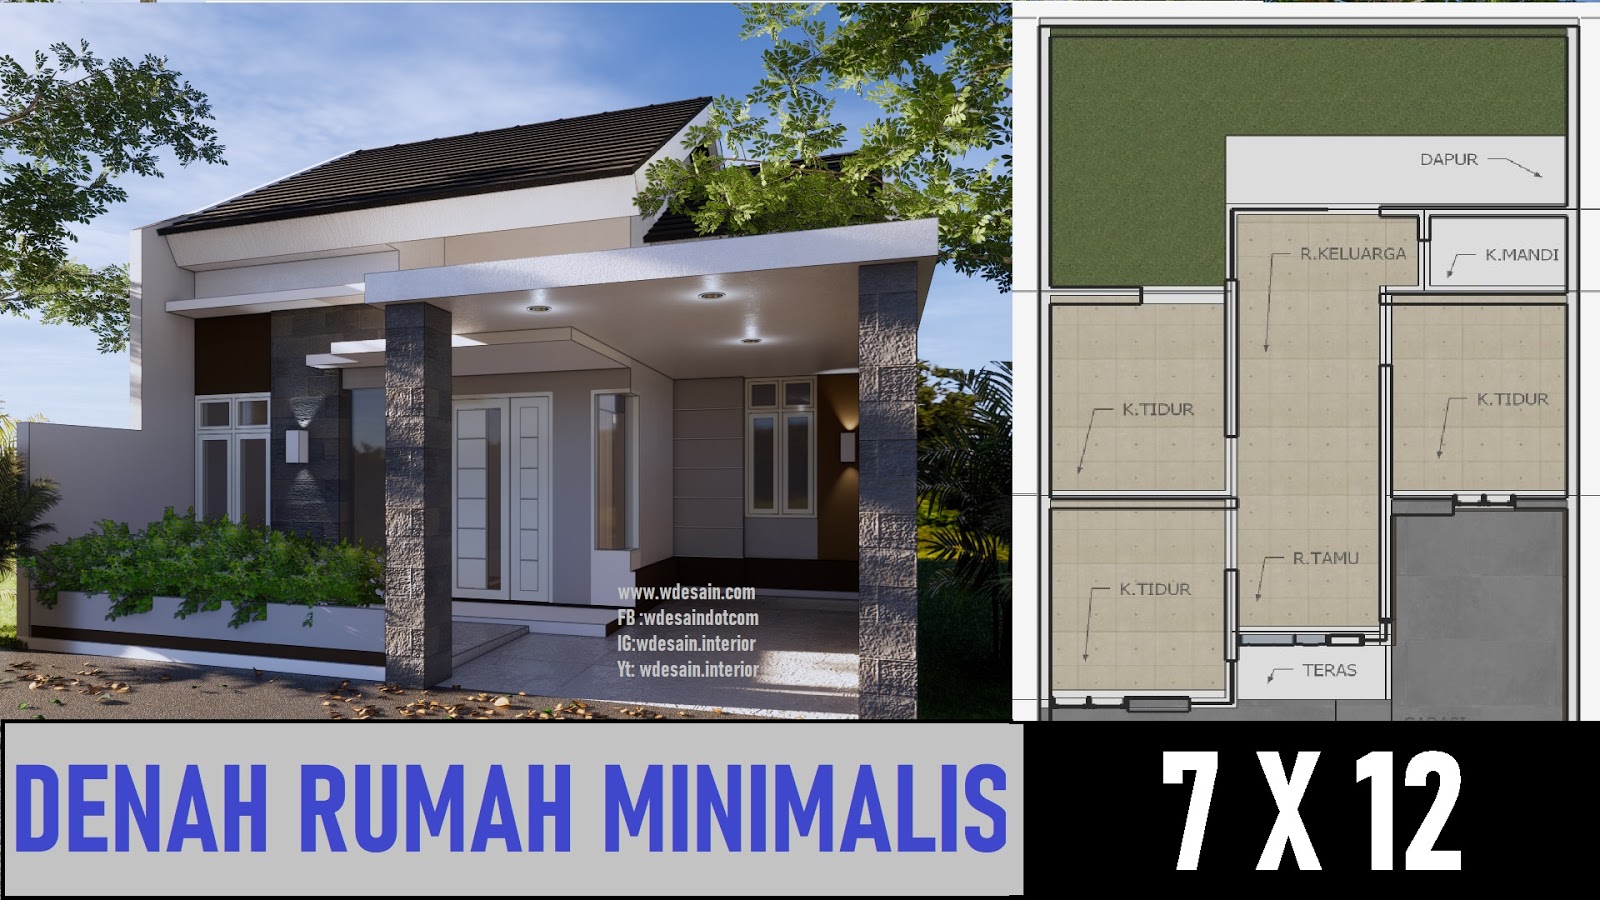 Denah Rumah Minimalis 3 Kamar 7x12 Taman Luas Desain Rumah Minimalis